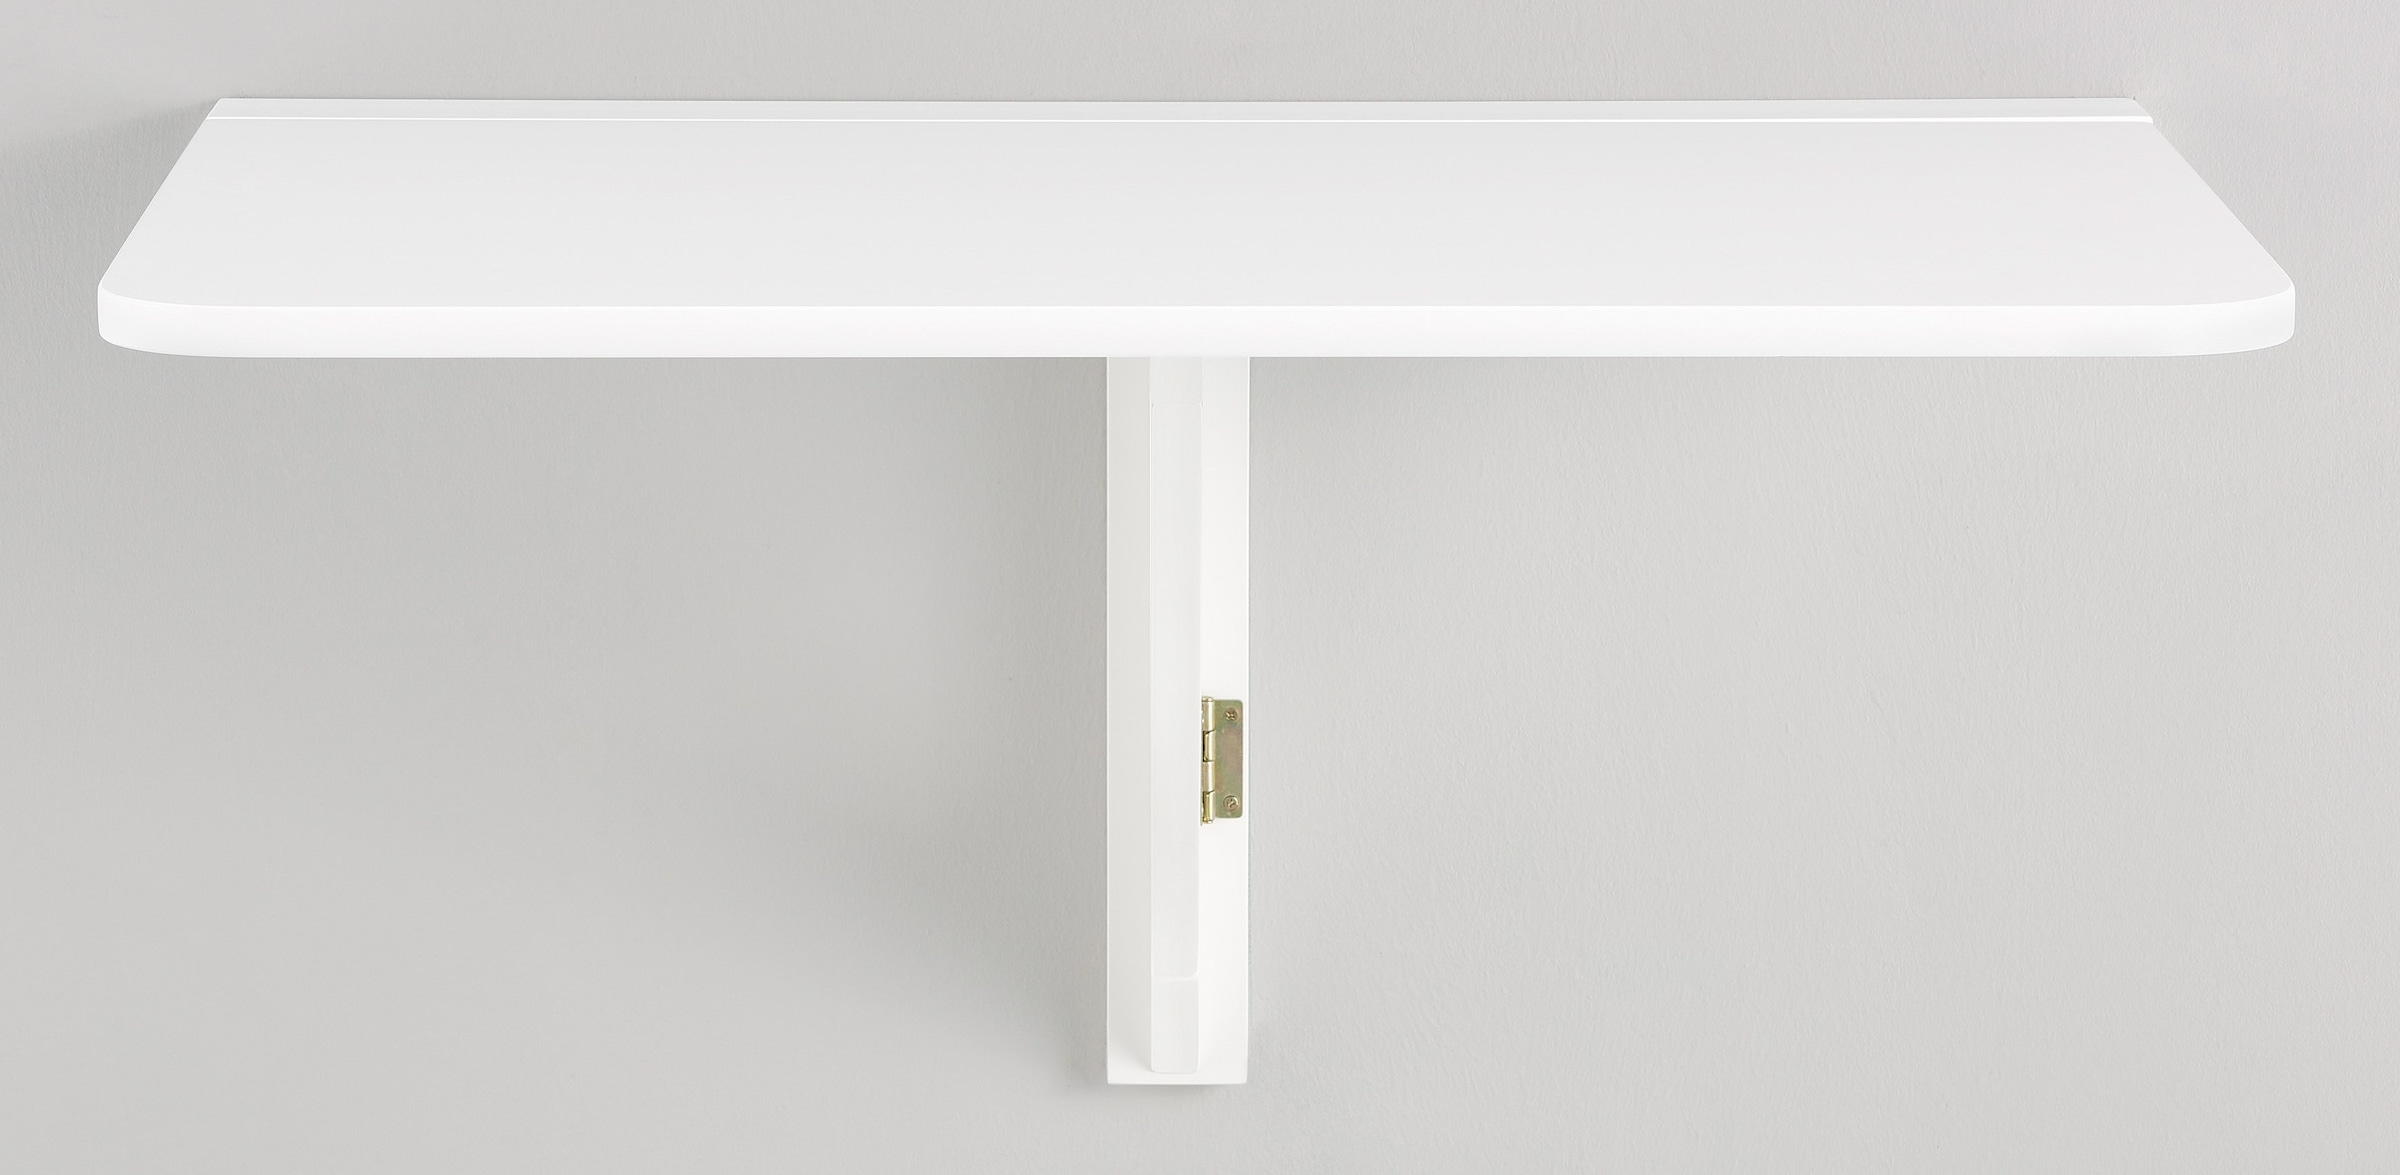 Home affaire Klapptisch »Trend«, aus weiß lackiertem MDF Holz, platzsparend, Tischplattenstärke 1,8 cm